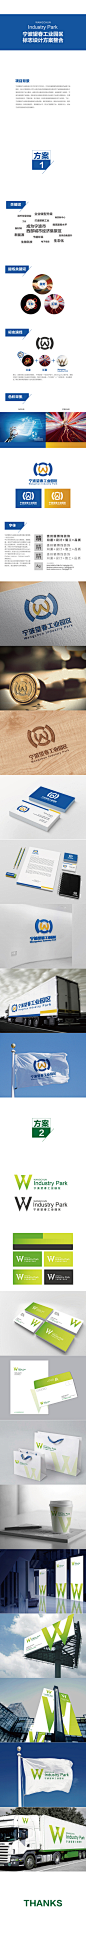 宁波望春工业园区logo设计-古田路9号-品牌创意/版权保护平台